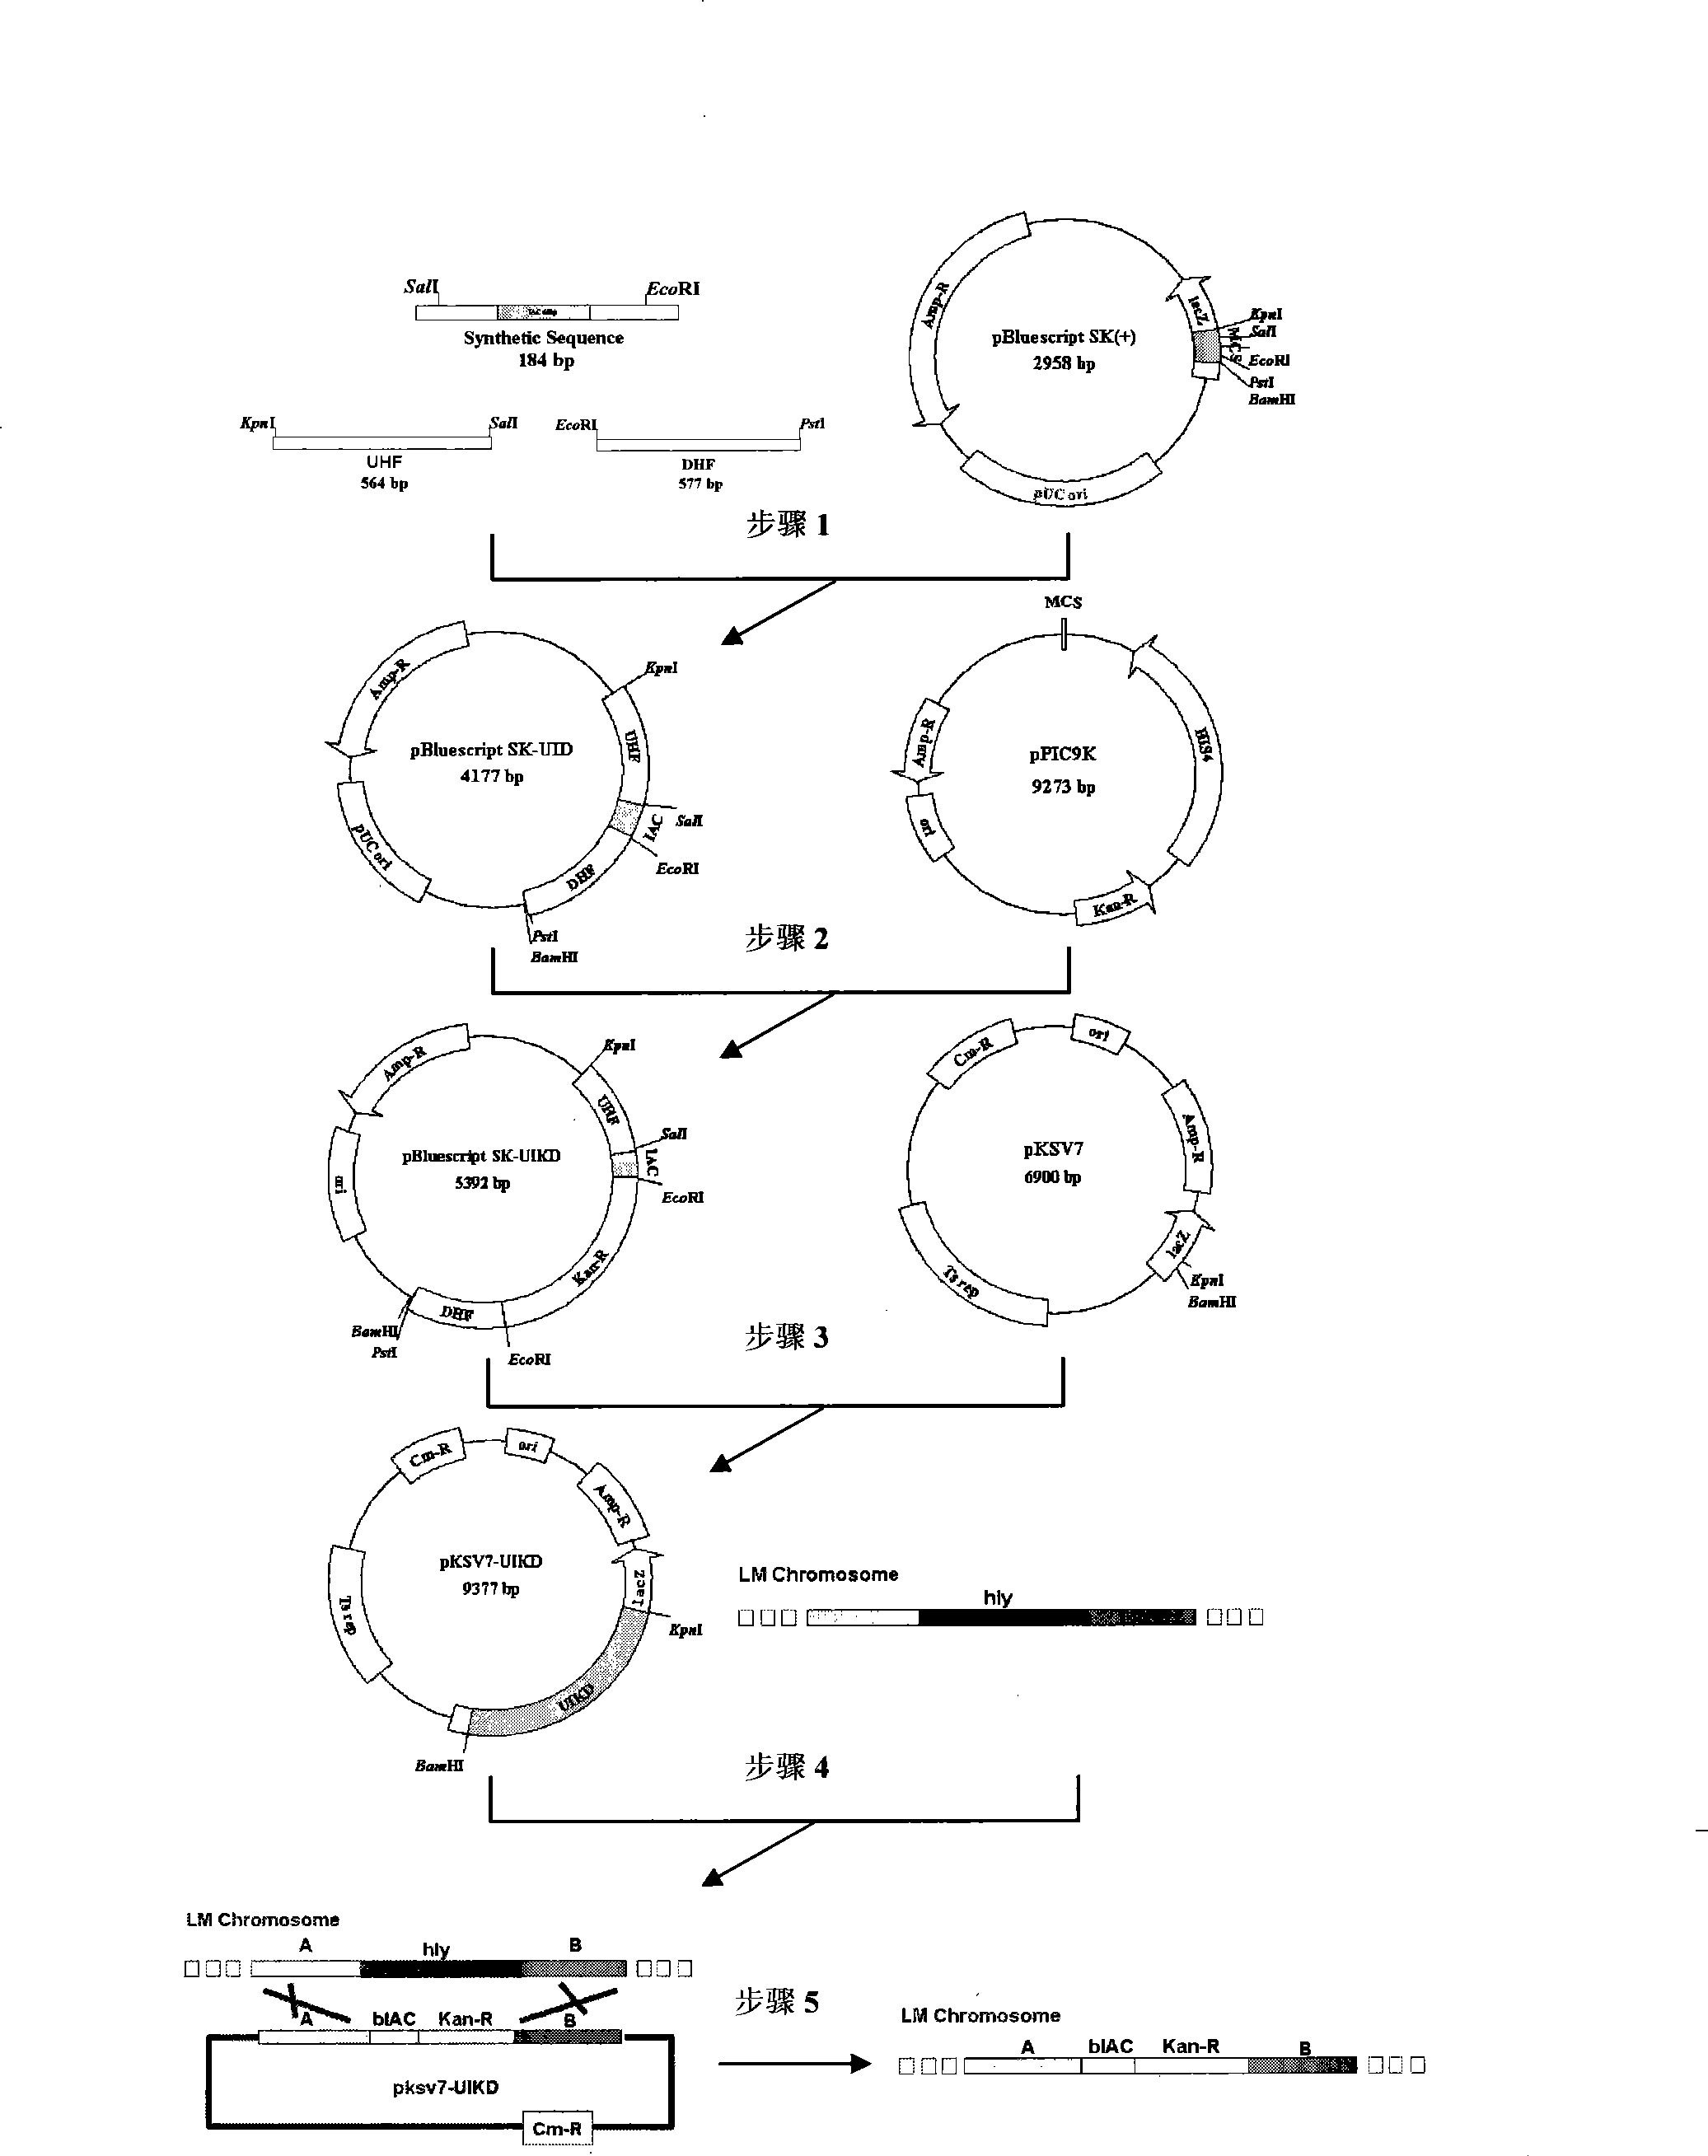 Method for preparing live bacteria internal standard based on gene substitution technique